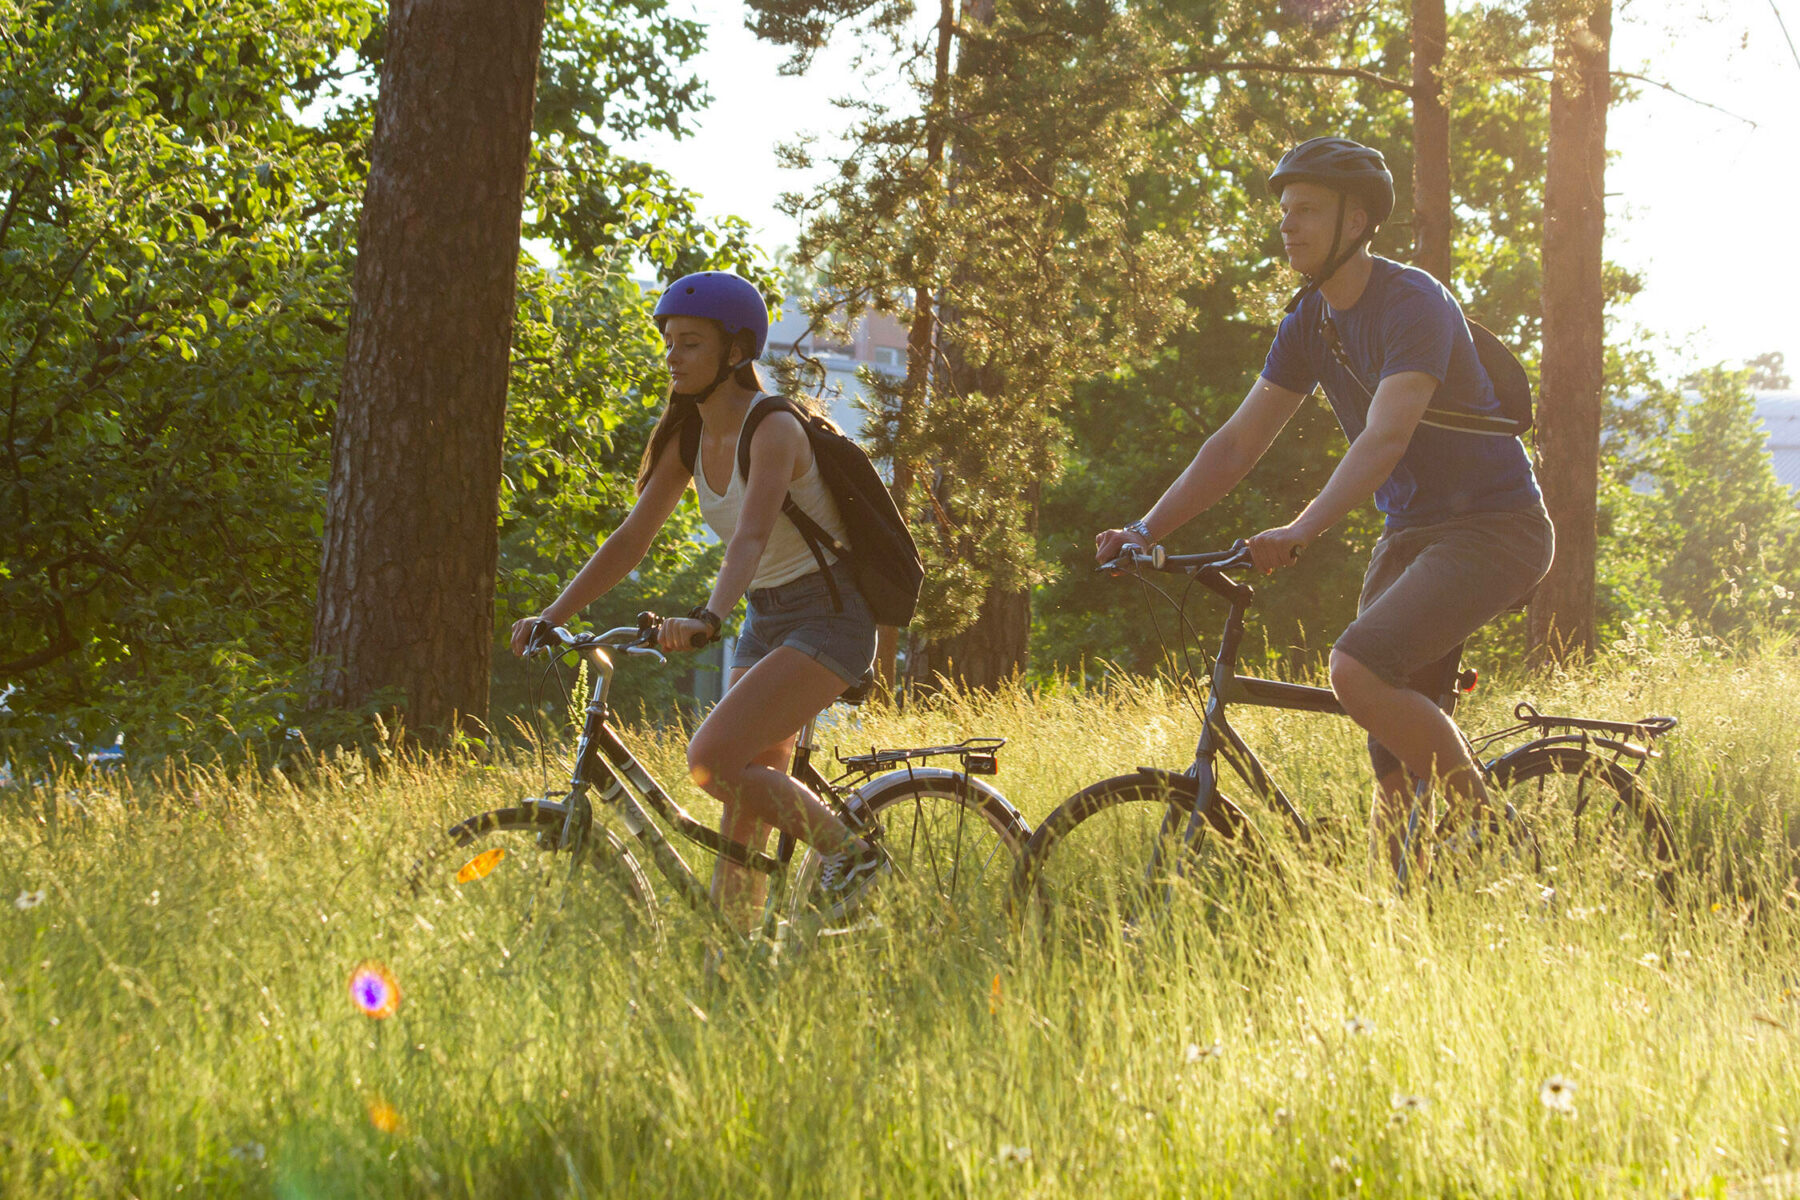 Par une journée ensoleillée, une femme et un homme traversent un parc à vélo en passant devant des arbres et une prairie.  